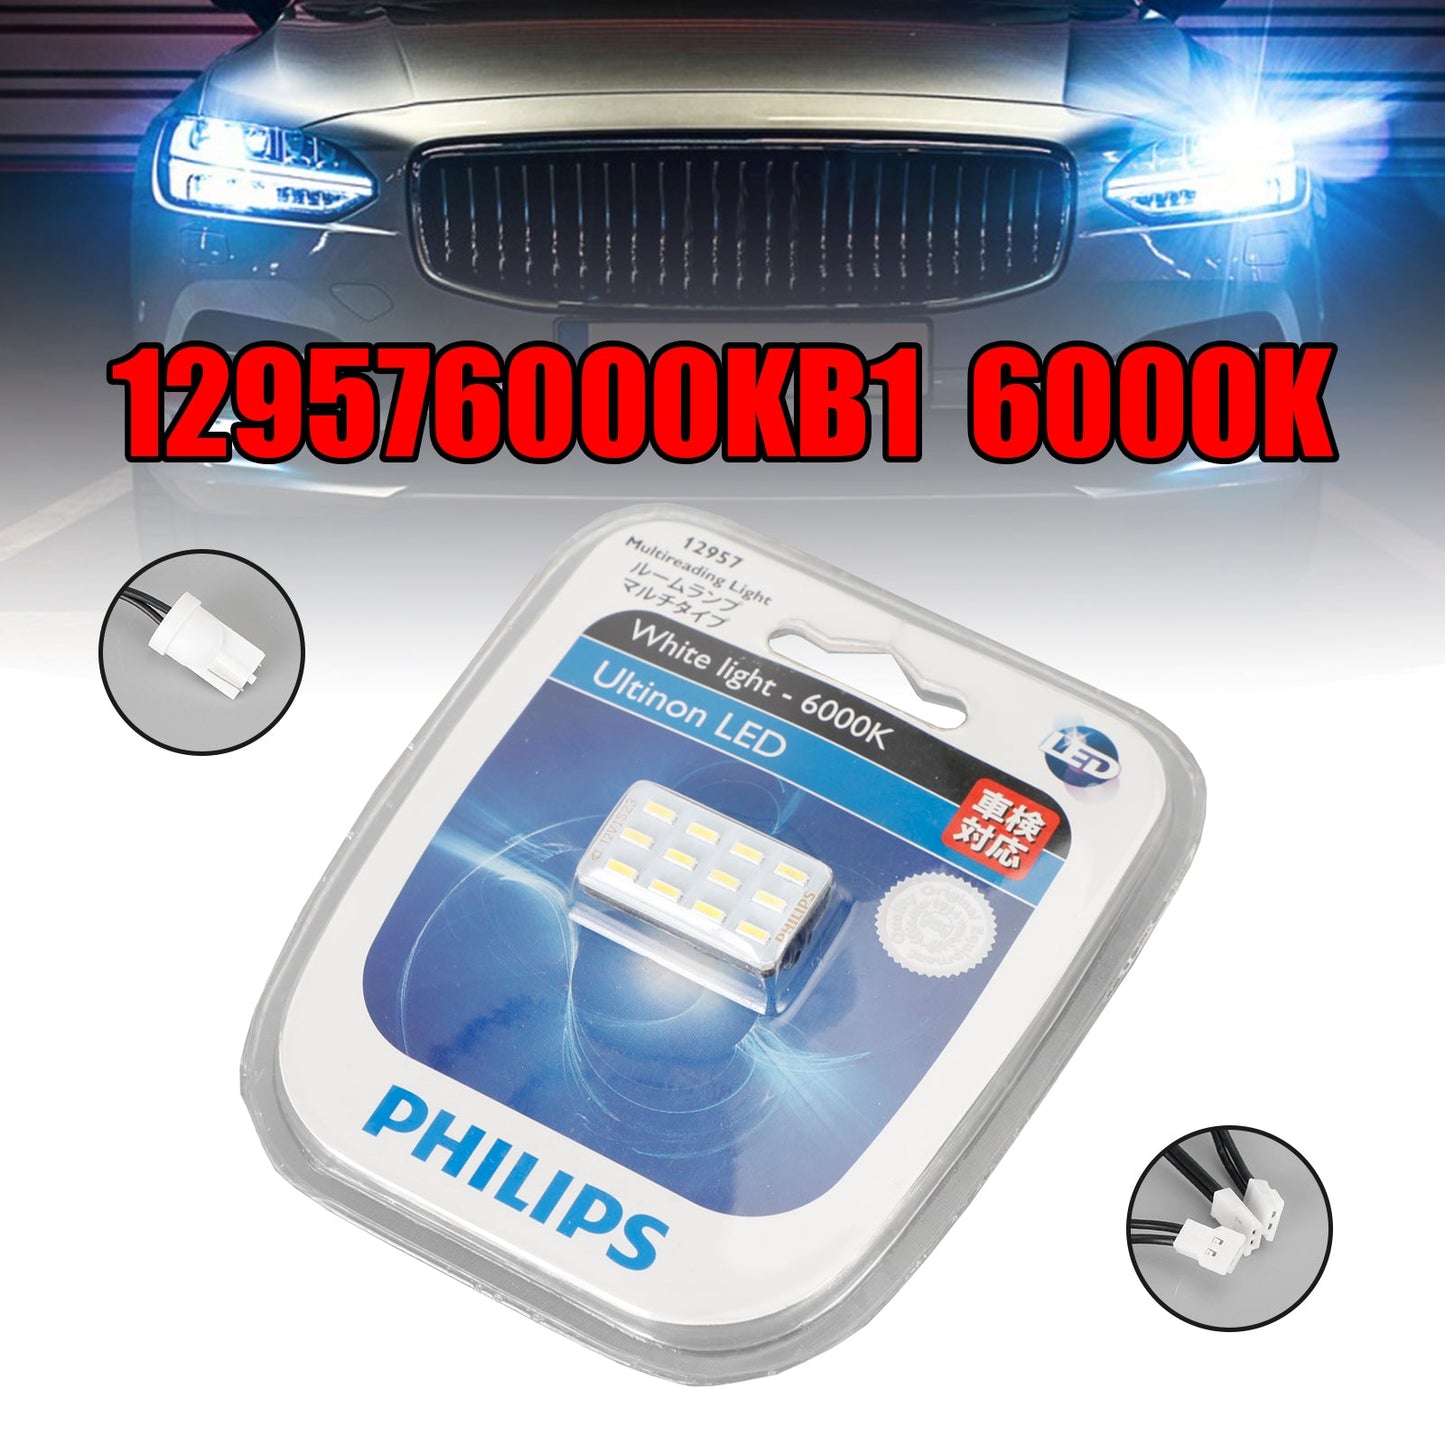 For Philips 129576000KB1 Car Ultinon LED Multireading Light 6000K White Light